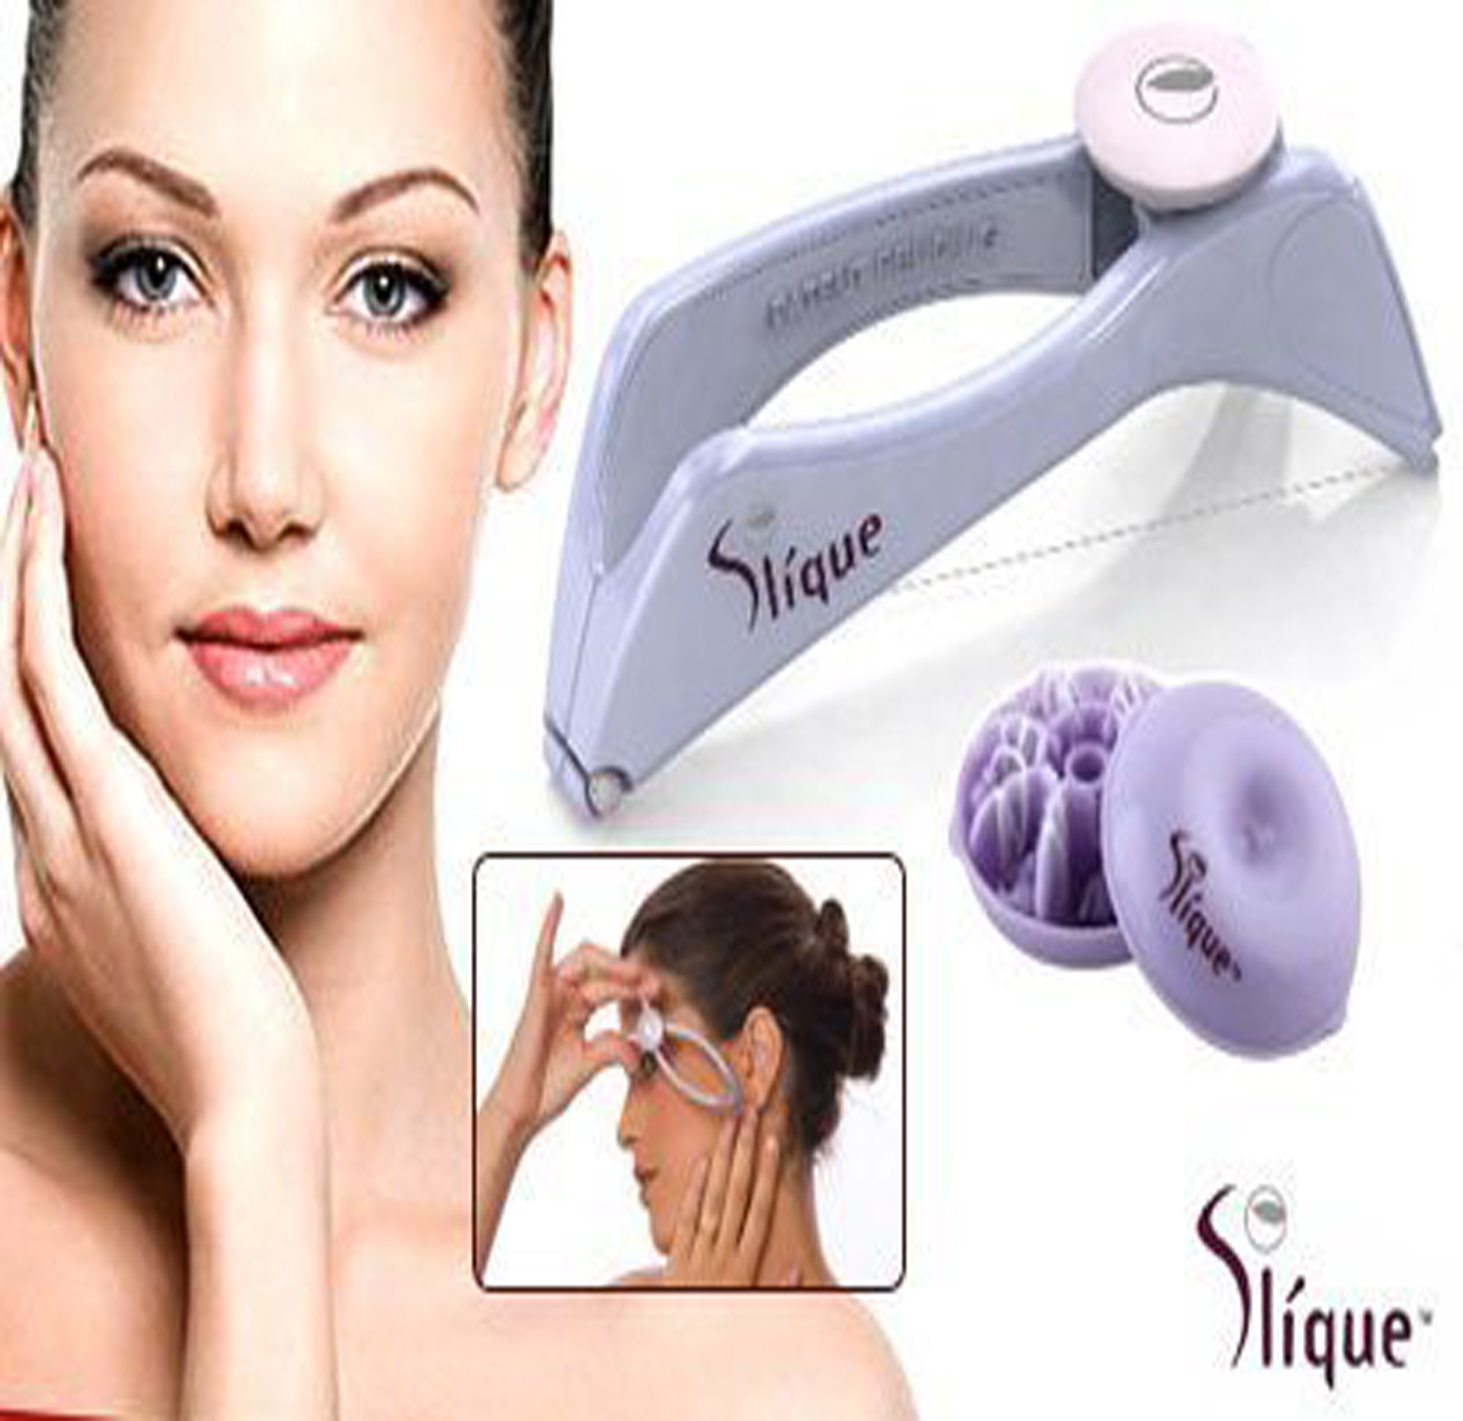 SLIQUE, Bath & Body, New Slique Face And Body Hair Removal Threading  System The Original Slique